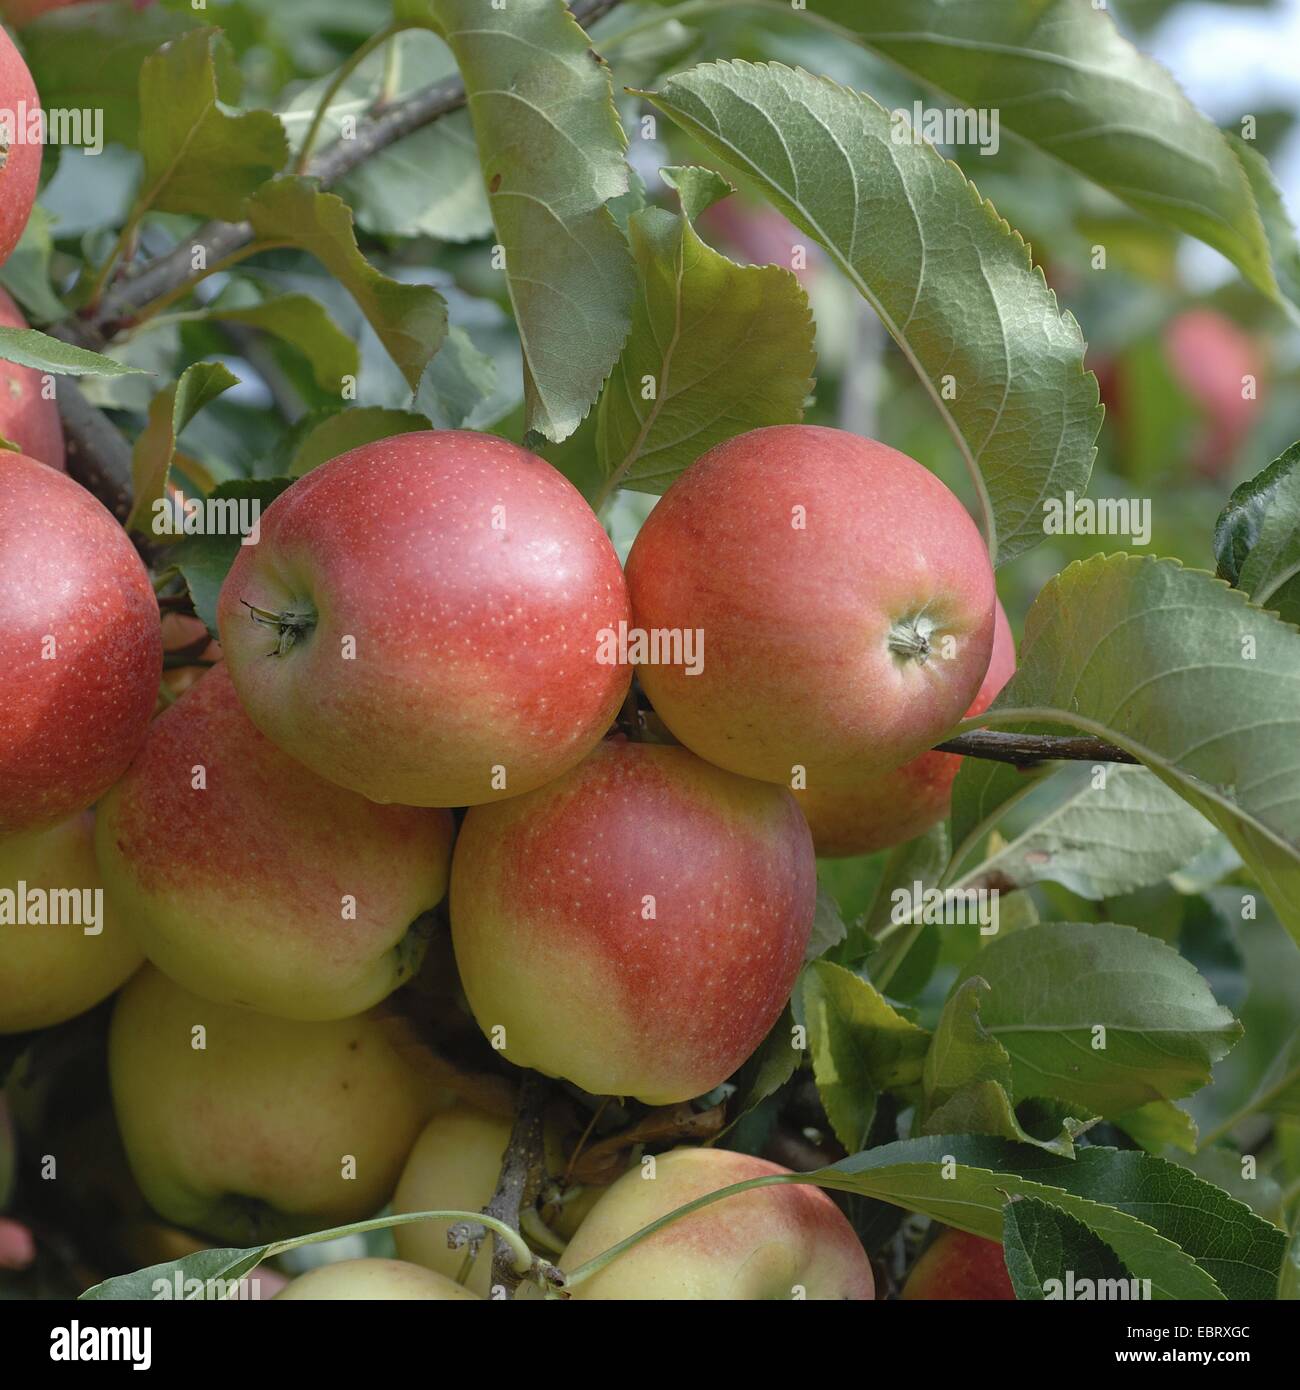 Manzano (Malus domestica 'Gala', Malus domestica), cultivar Gala Gala, manzanas en un árbol Foto de stock